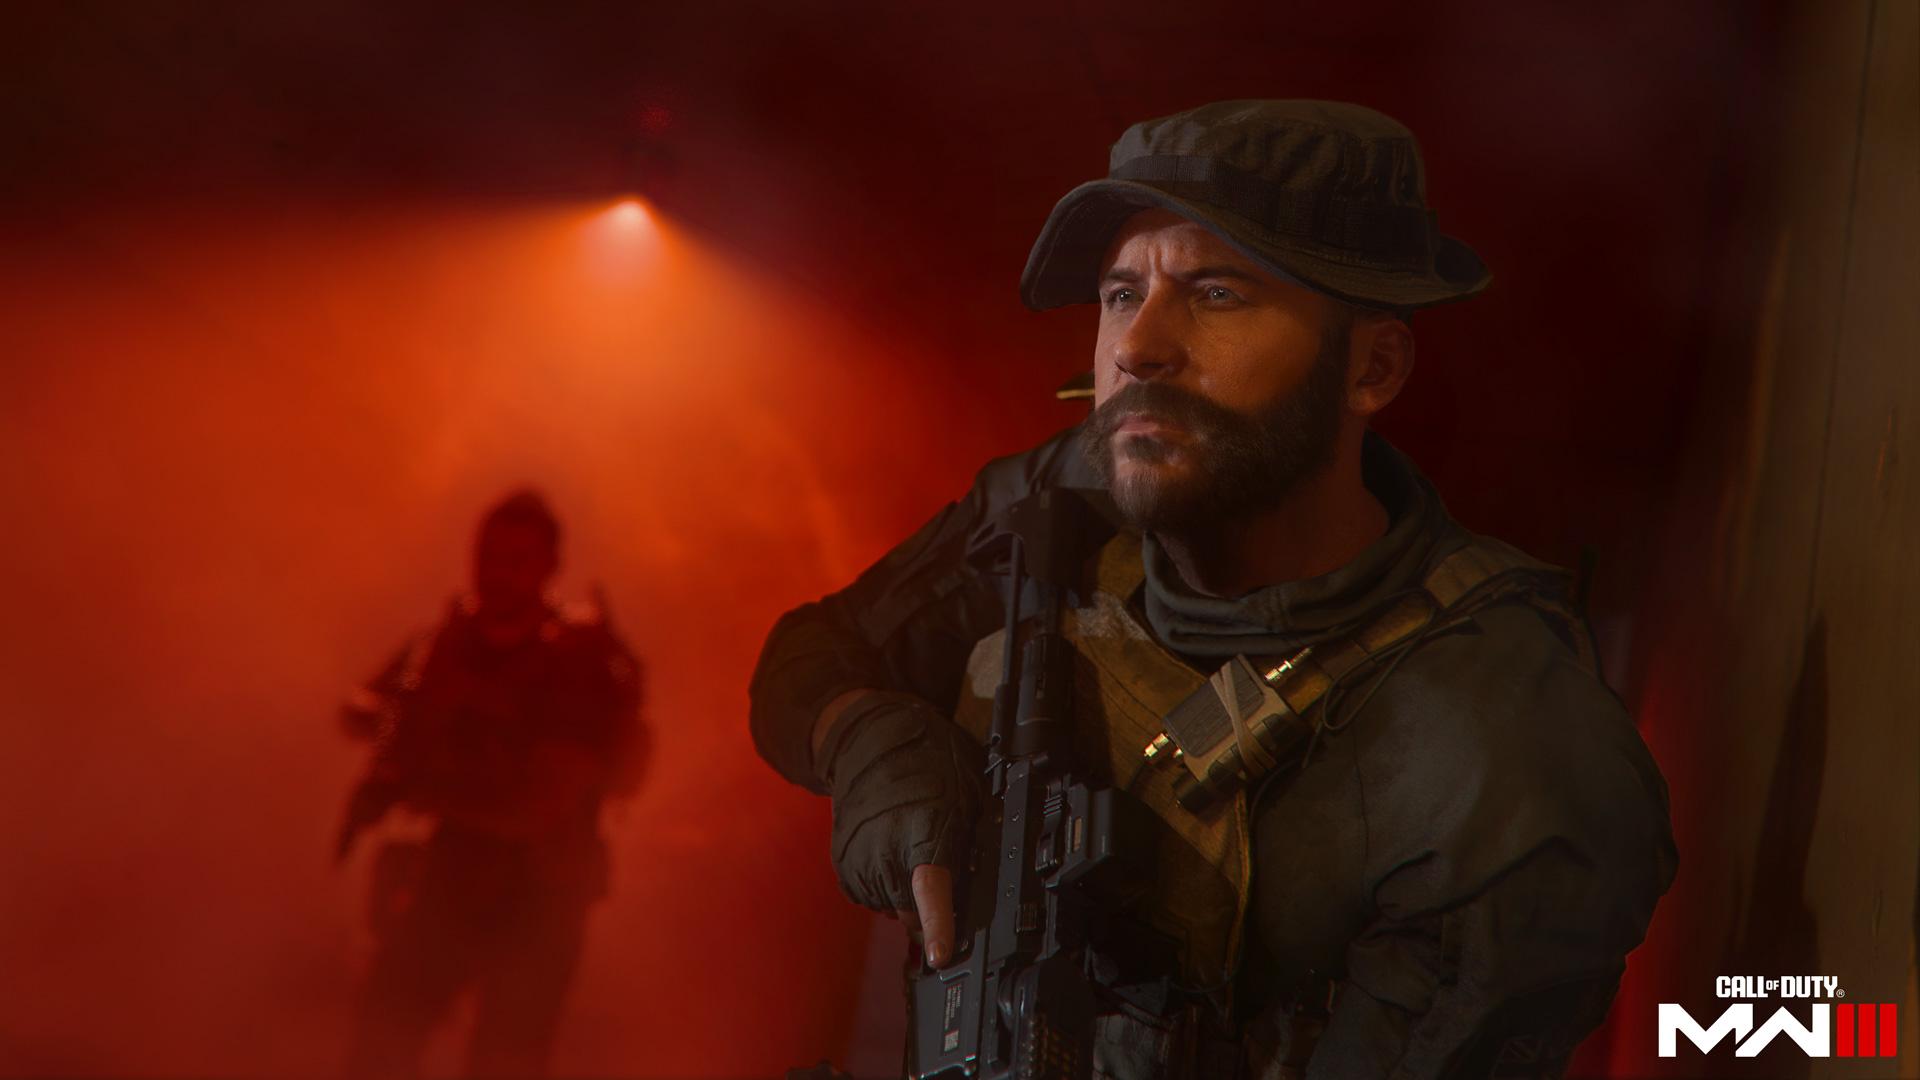 Oficiálny obrázok z hry Call of Duty Modern Warfare III.